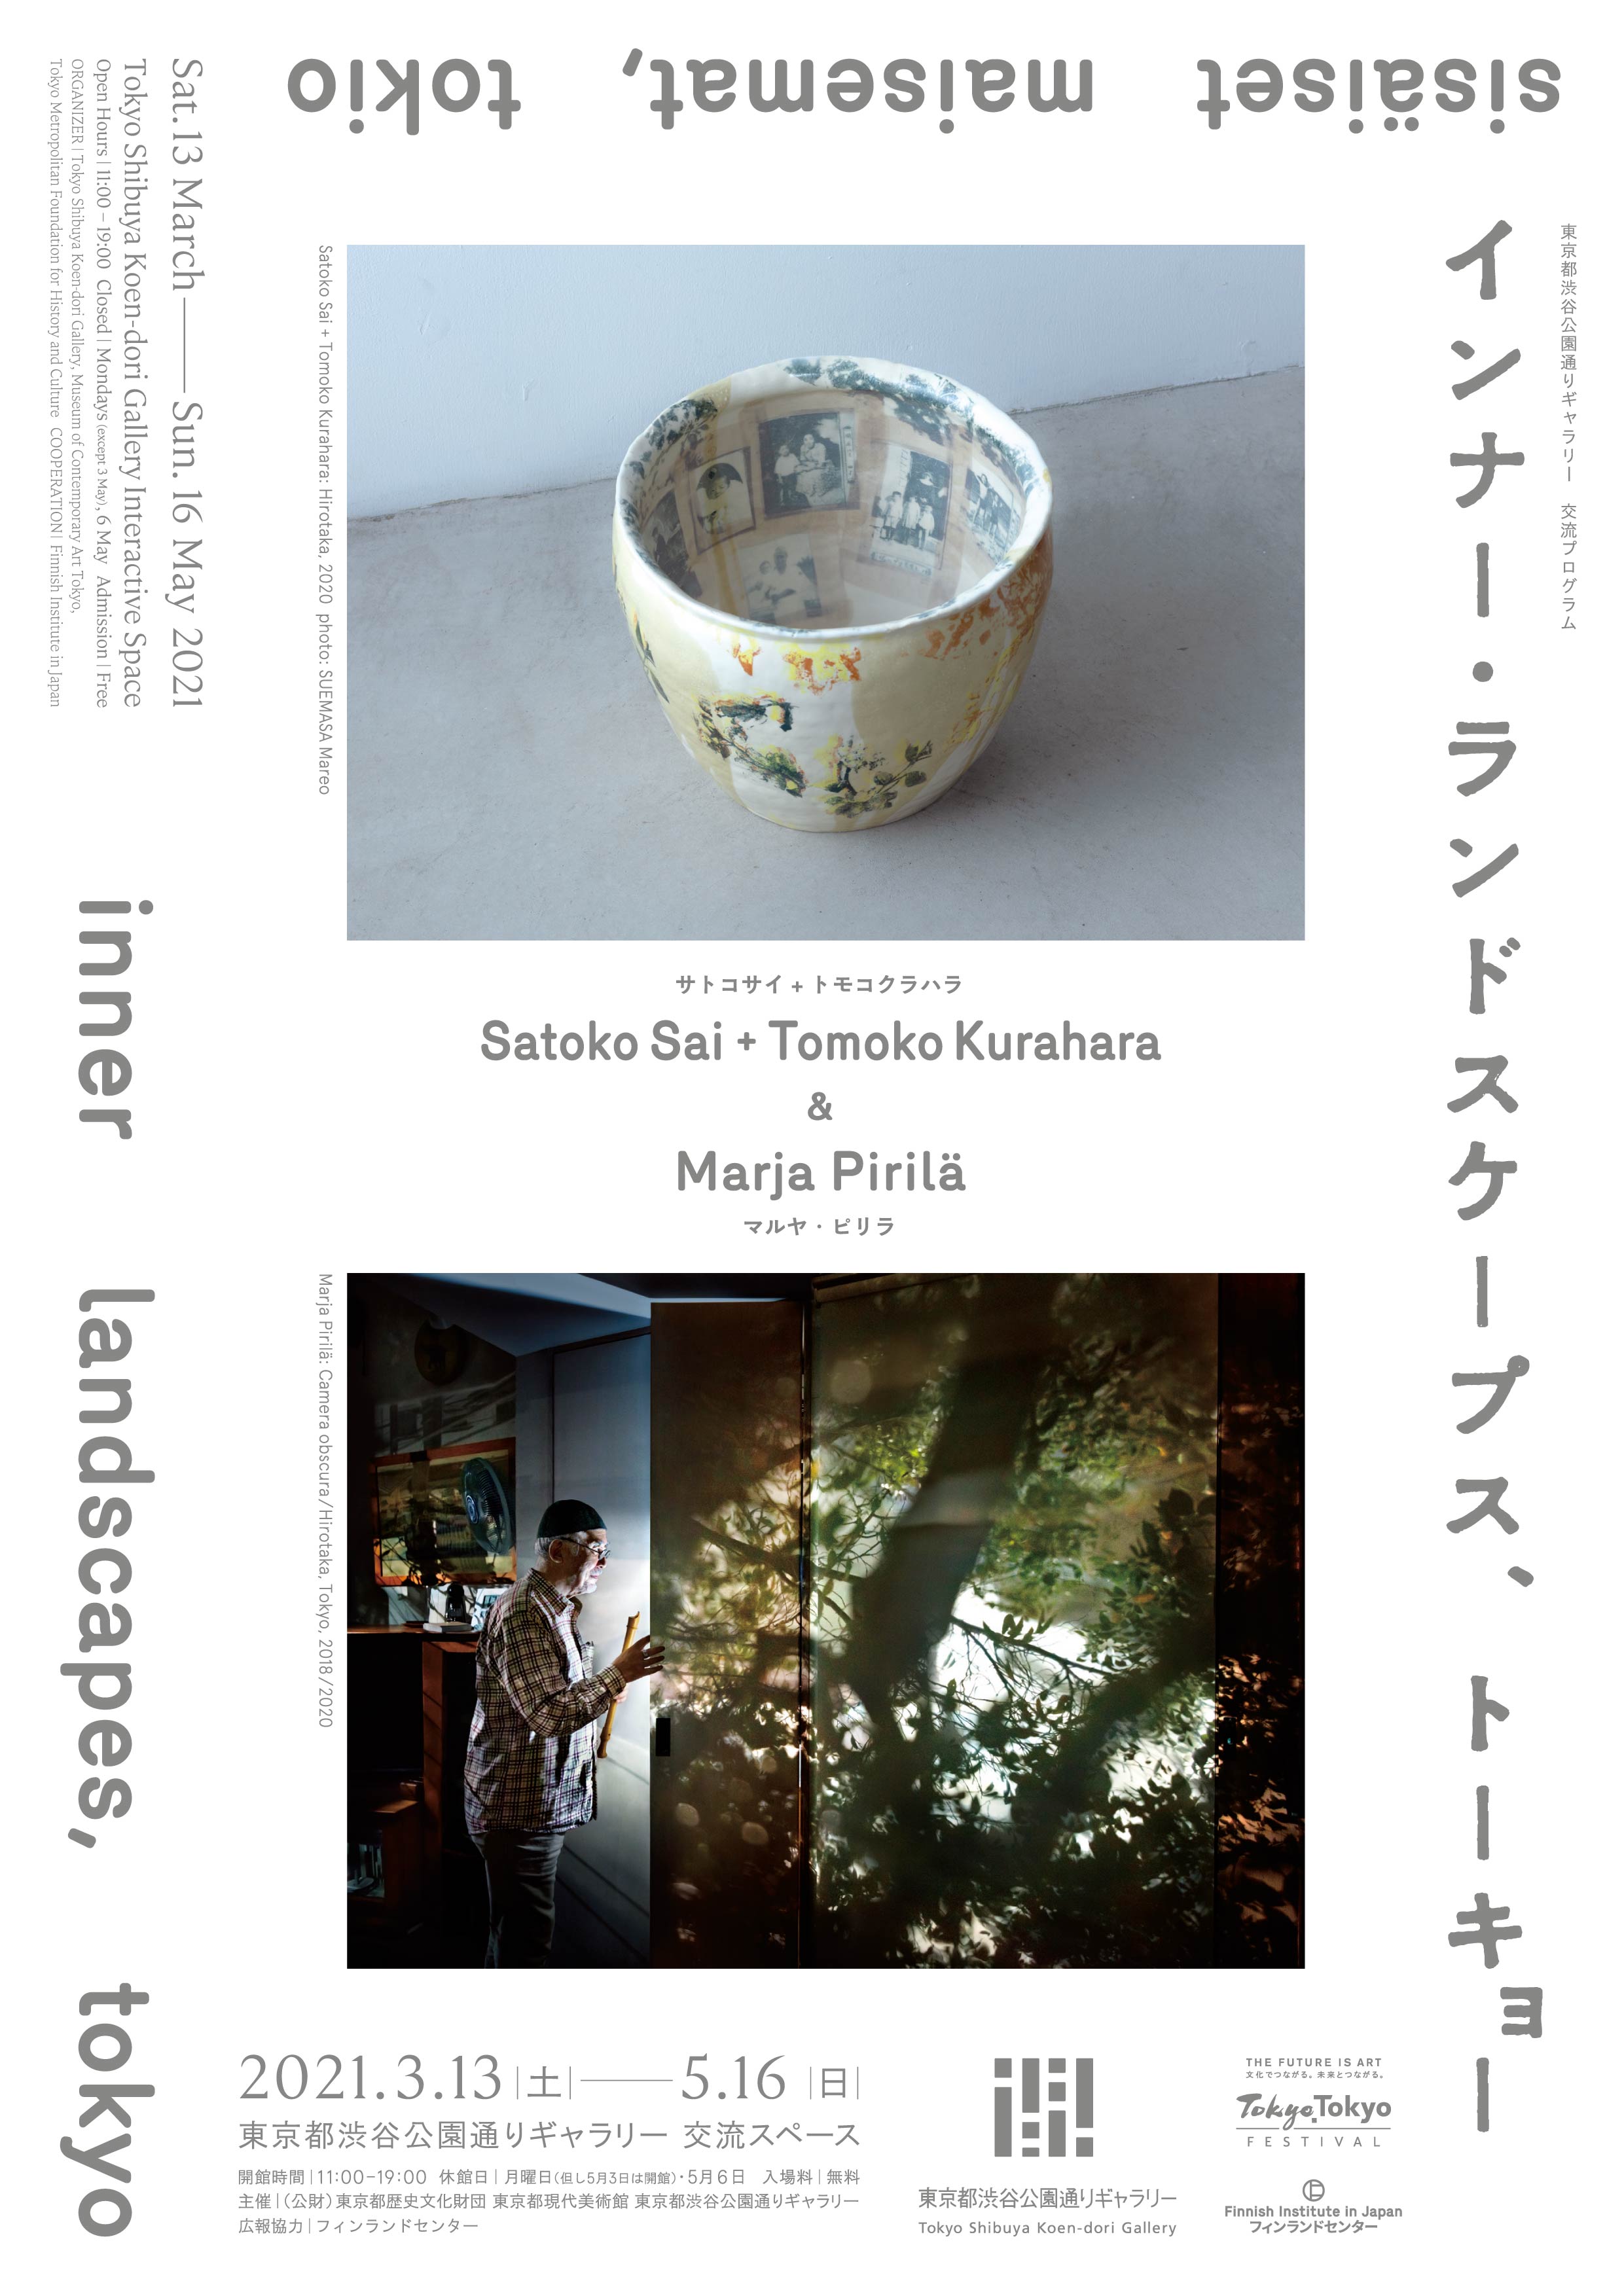 <b>inner landscapes, tokyo  <font color="D2322E">【Reopen on 1 June (Reservation required)】</font></b>